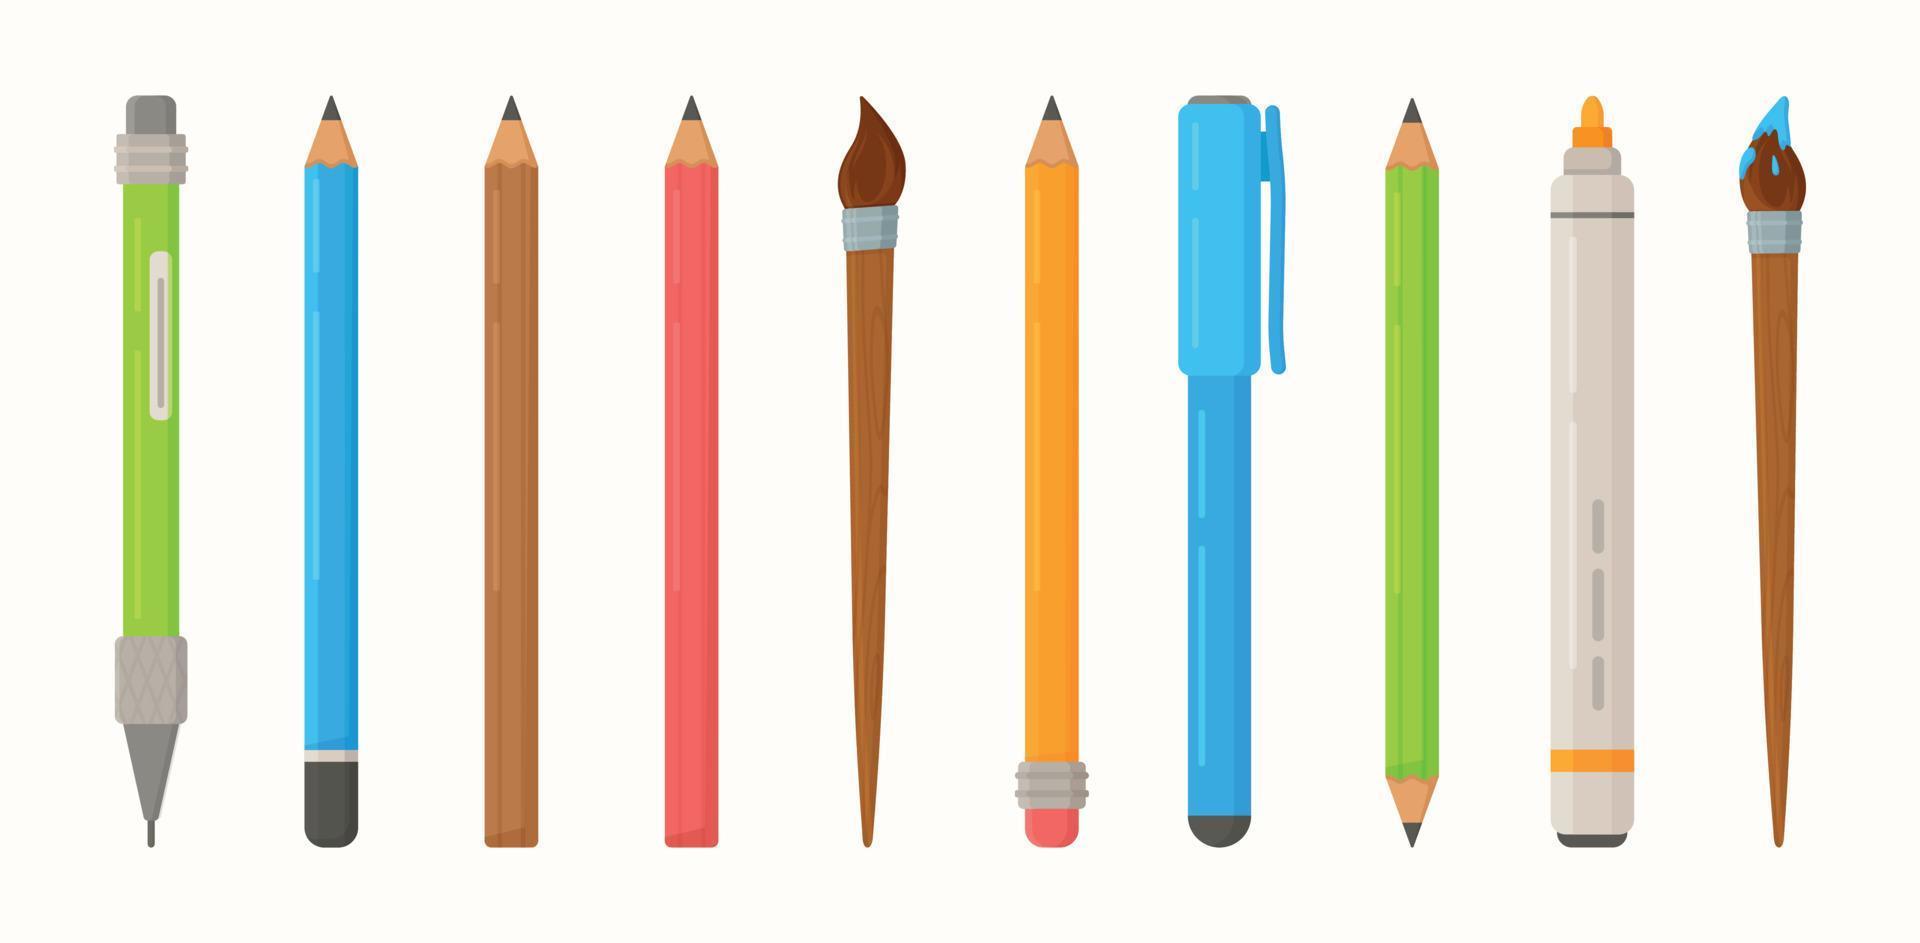 vector reeks van schrijfbehoeften voor schoolkinderen. pennen, potloden, markeringen, borstels en andere school- voorwerpen.